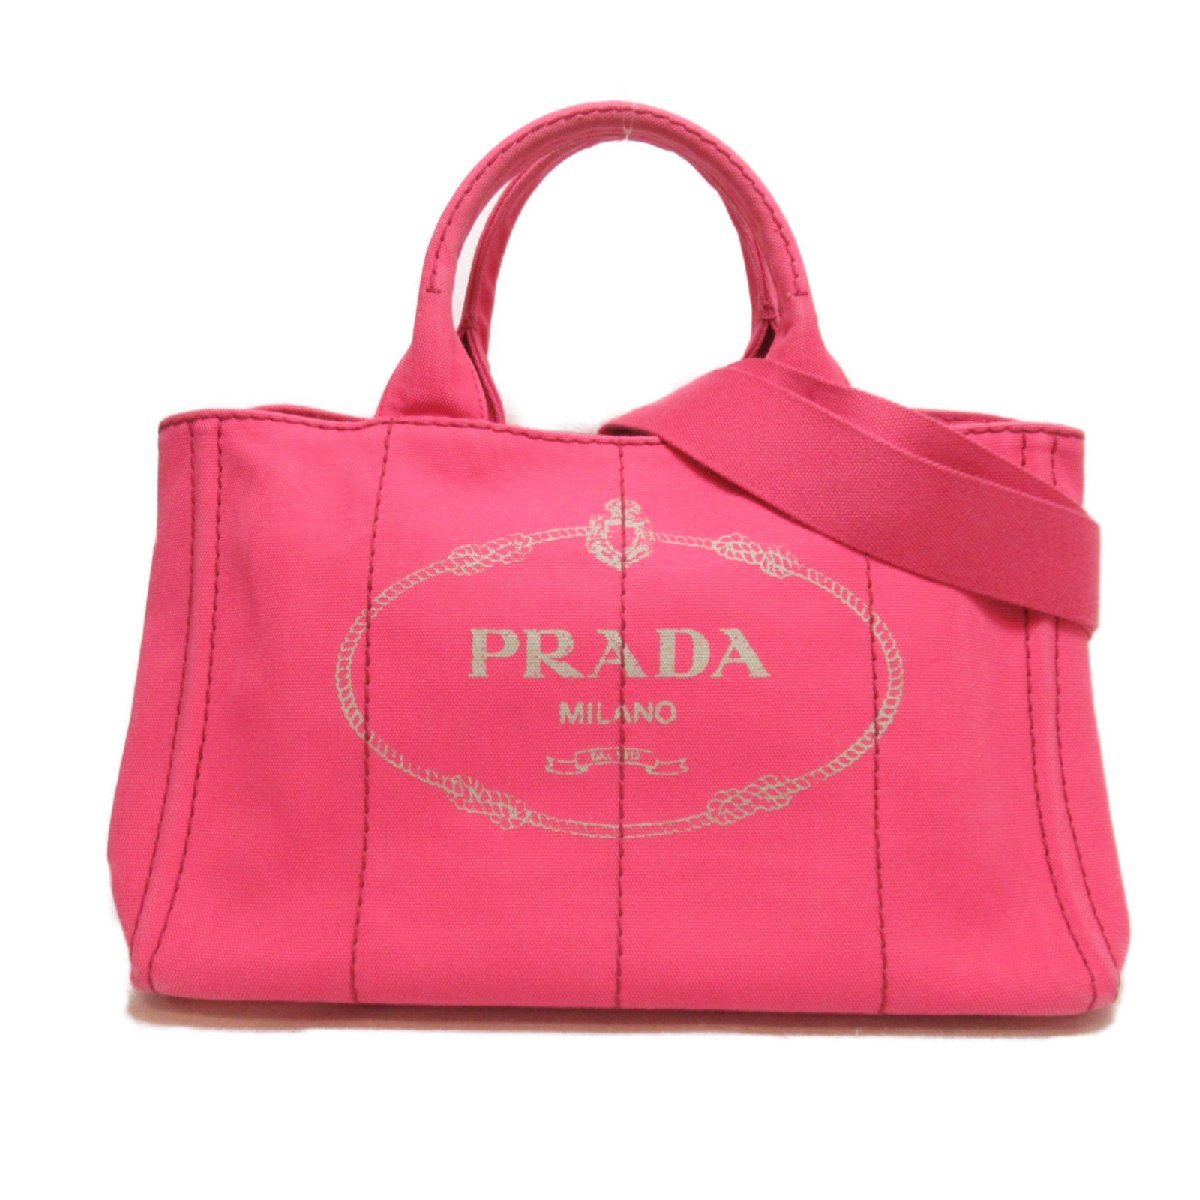 PRADA プラダ トートバッグ 2wayカナパトート ピンク系 キャンバス 